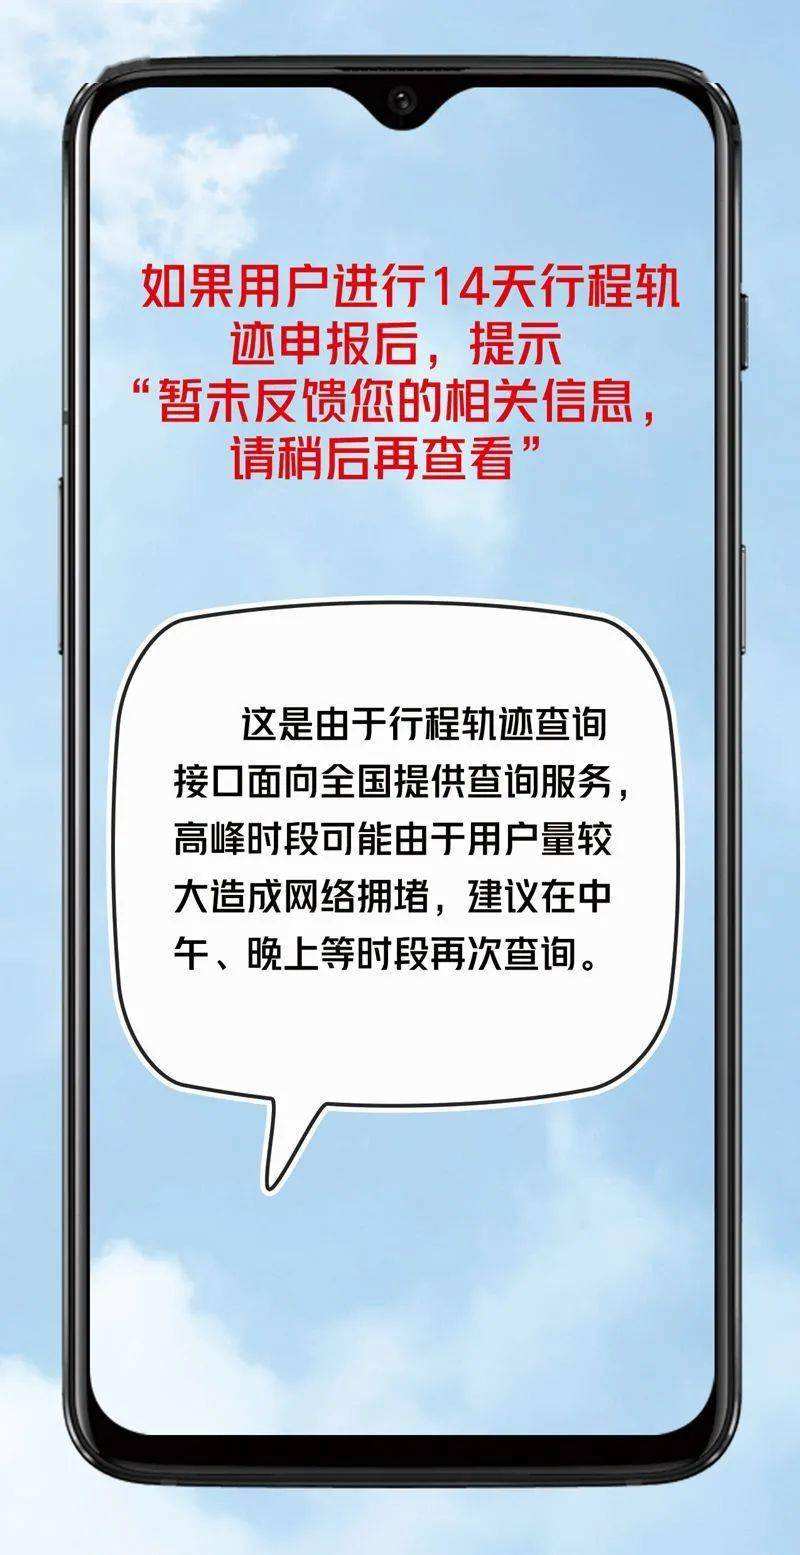 北京儿童医院急求黄牛挂号电话的记得收藏；北京健康宝被错误弹窗后如何申诉?的简单介绍